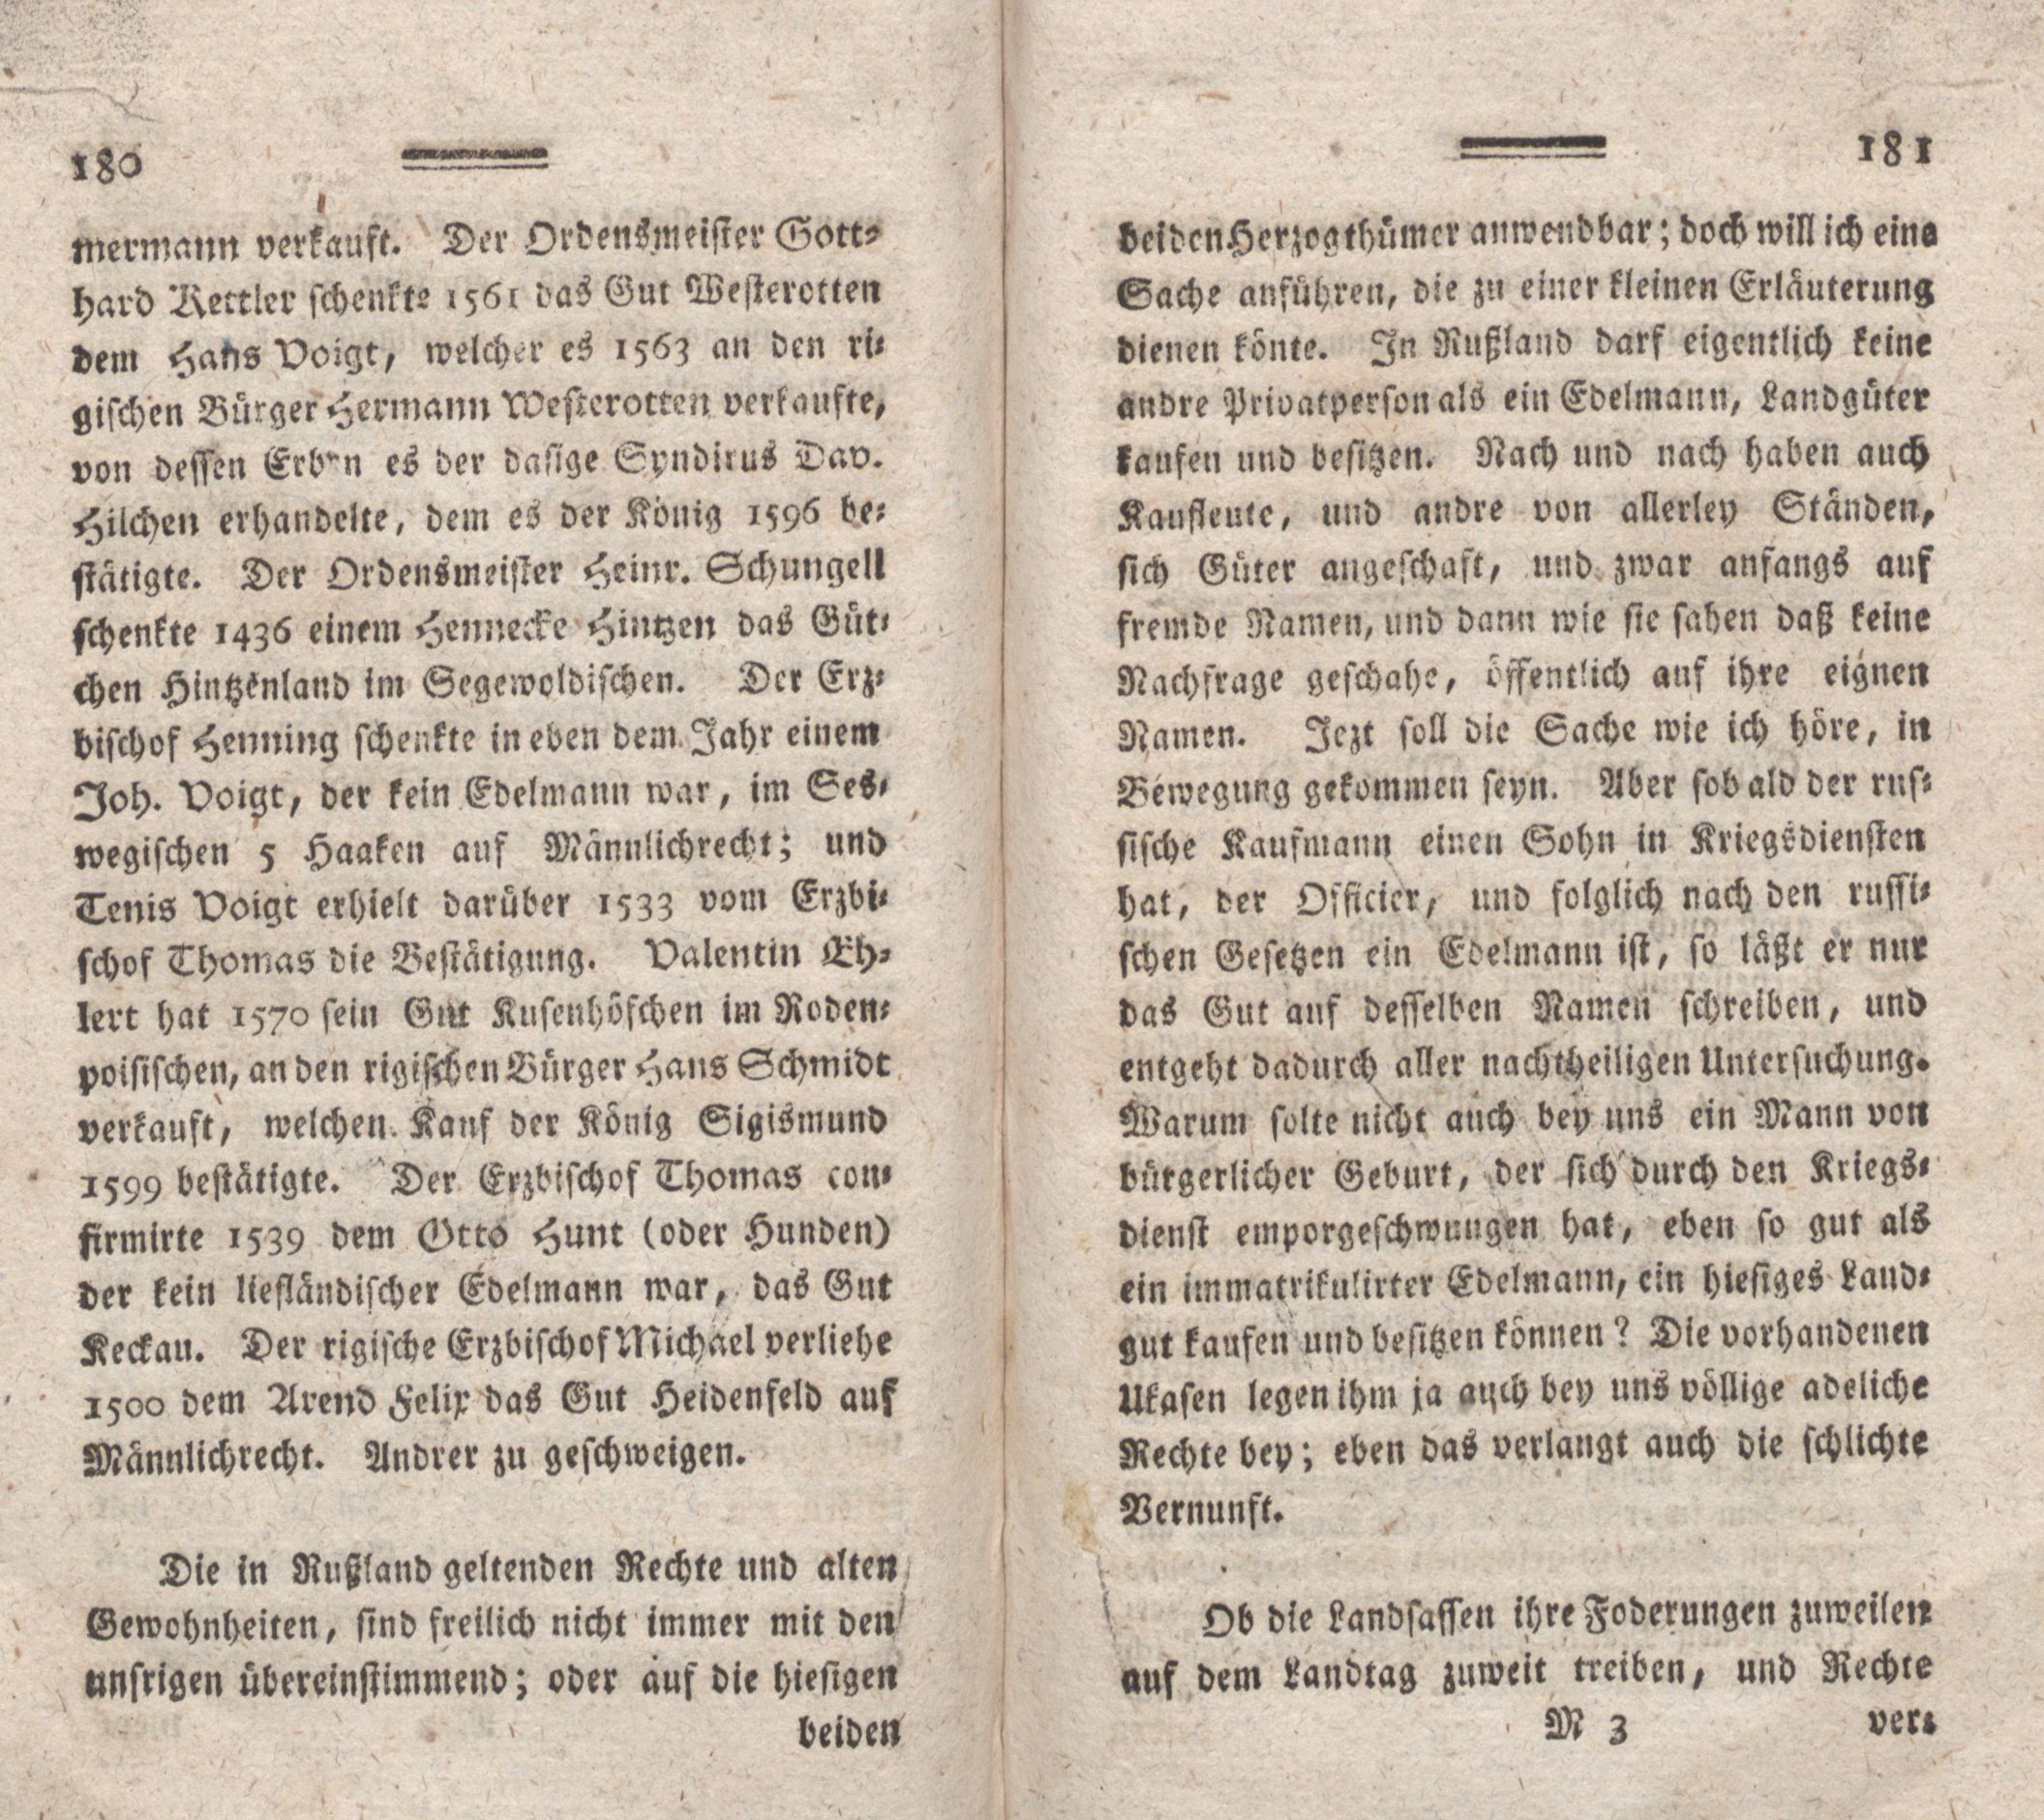 Nordische Miscellaneen [08] (1784) | 91. (180-181) Main body of text